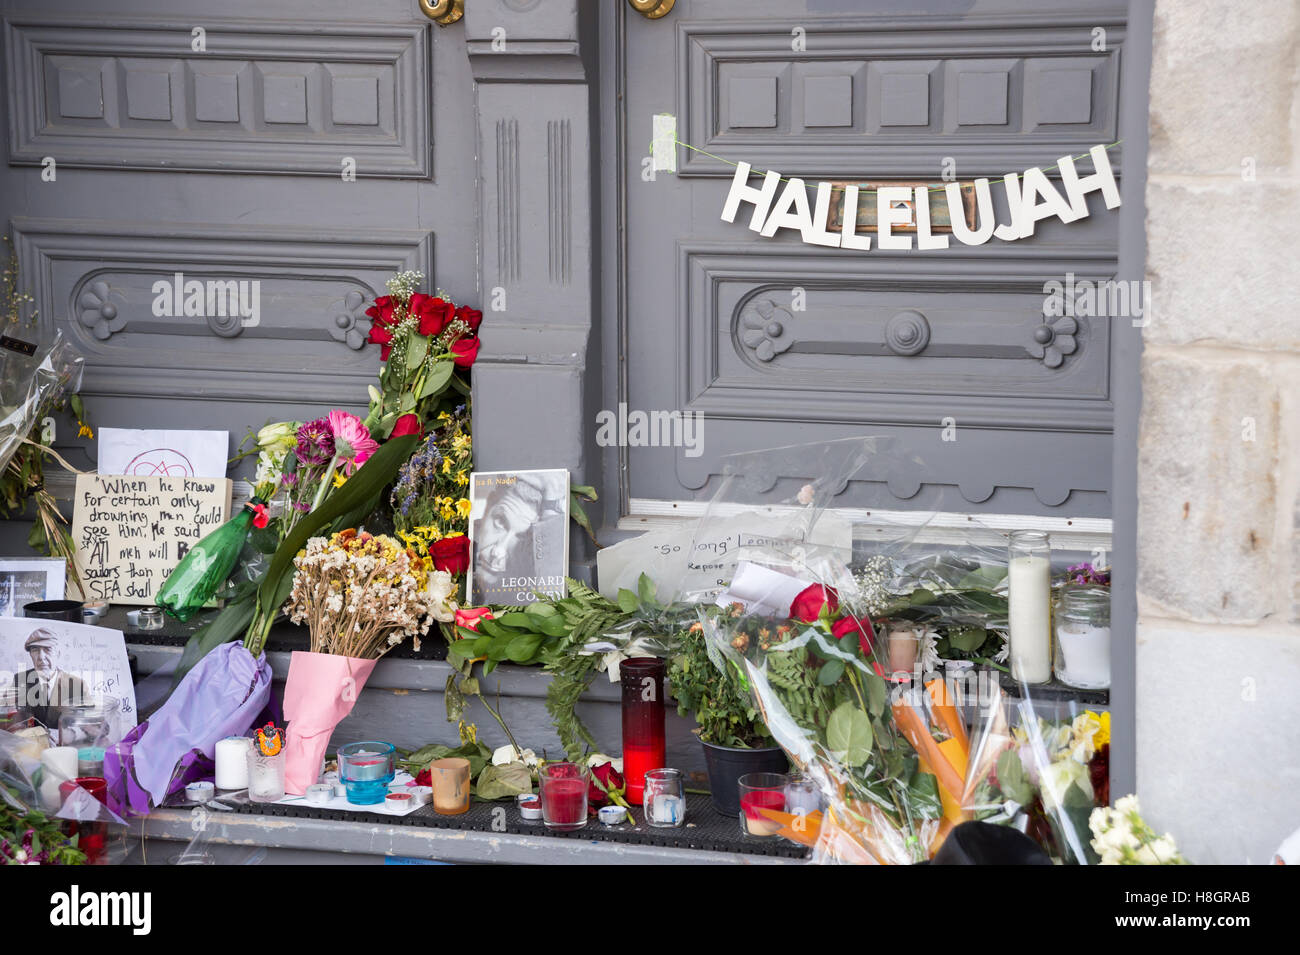 Montréal, Canada. 12 novembre, 2016. Hommage à Leonard Cohen en face de sa maison sur la rue Vallières. L'artiste canadien est décédé le 7 novembre. Crédit : Marc Bruxelles/Alamy Live News Banque D'Images